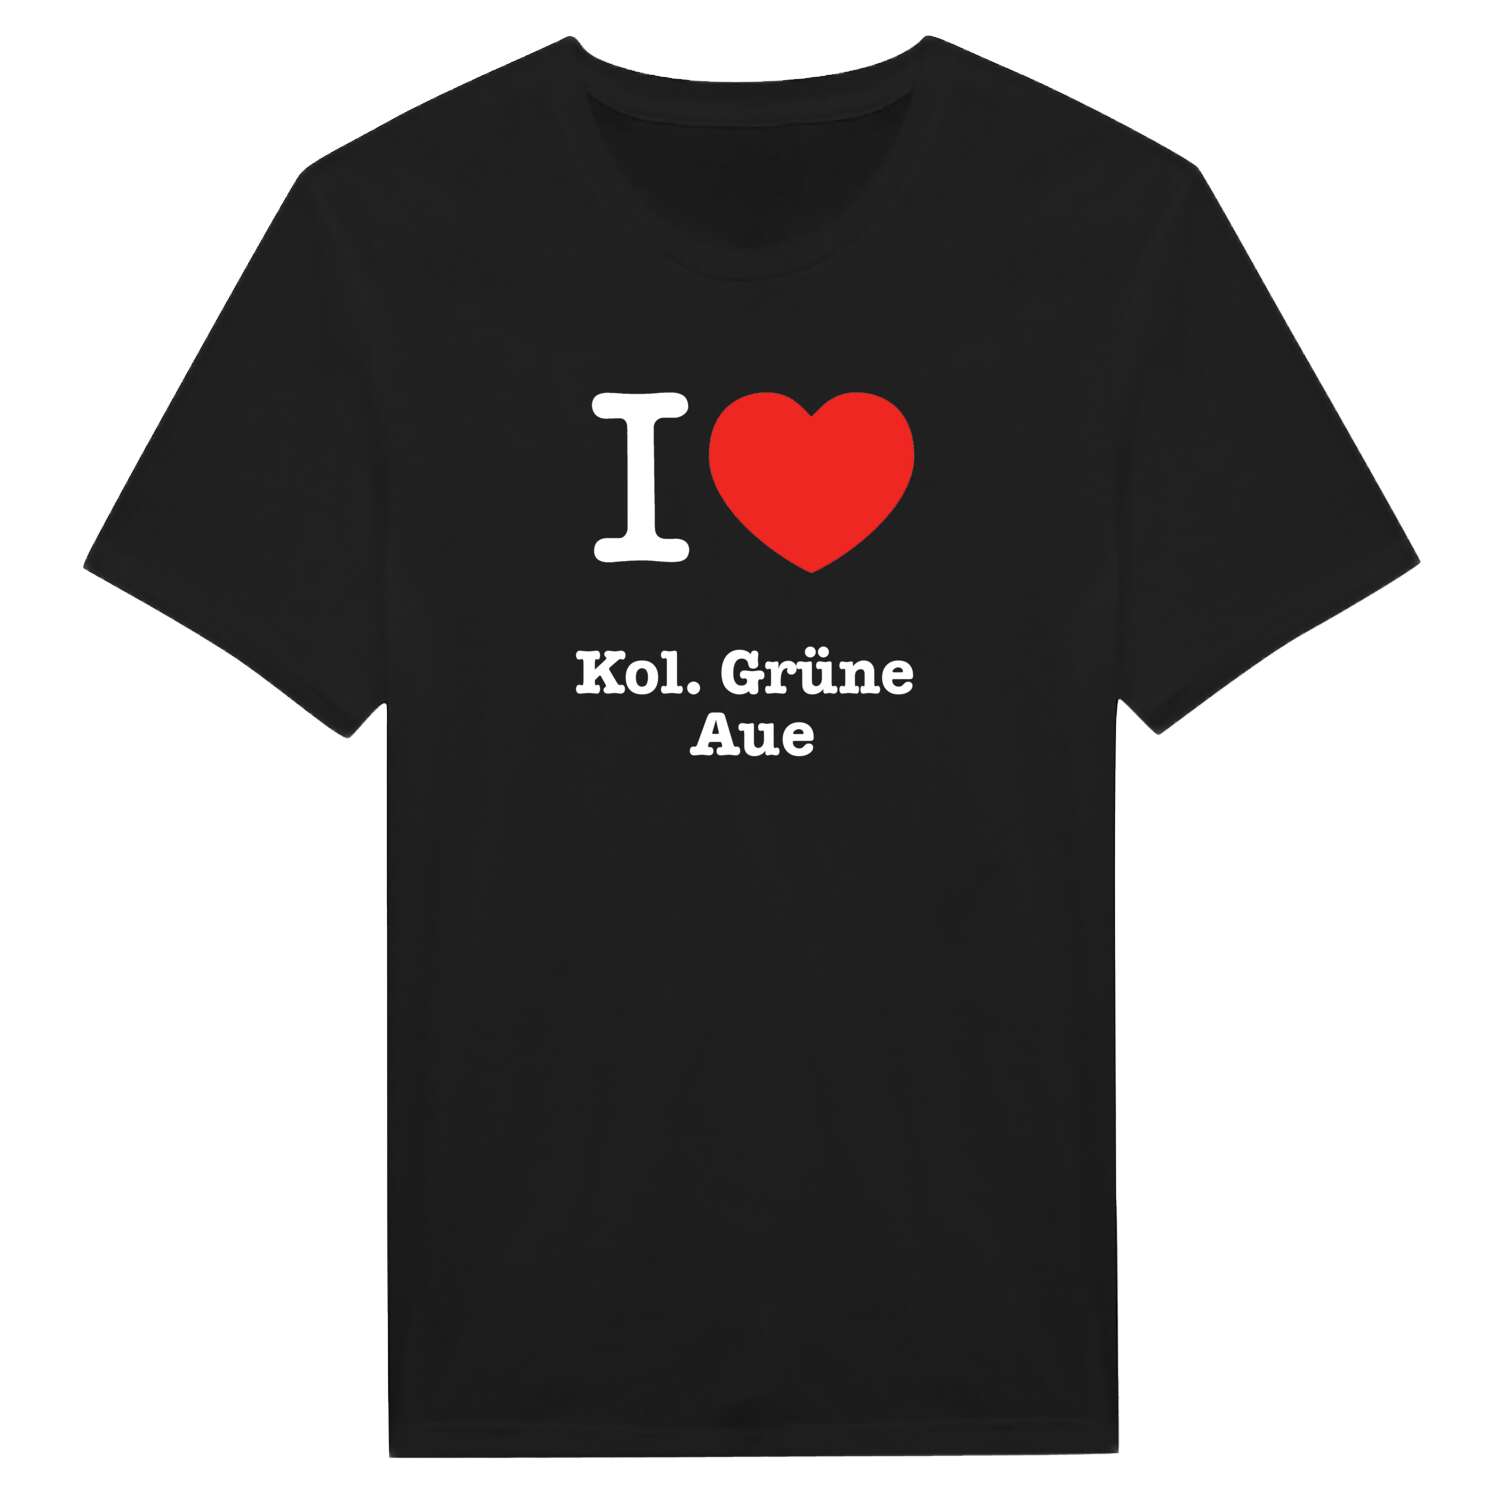 Kol. Grüne Aue T-Shirt »I love«